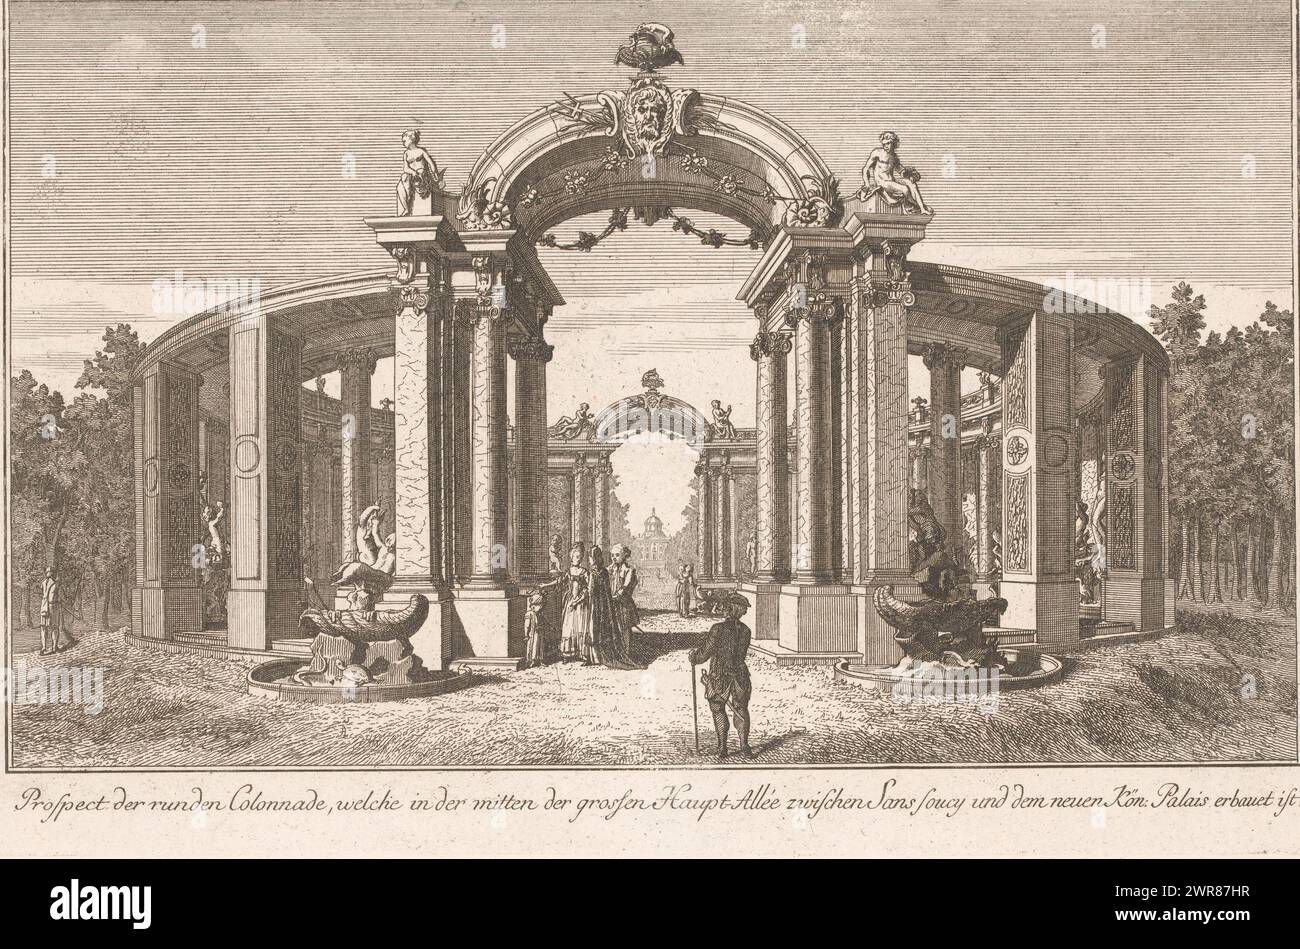 Vue d'une colonnade dans les jardins du palais de Sanssouci, Prospect der runden Colonnade, welche in der Mitten des grossen (...) (Titre sur objet), numéroté en haut à droite : 64., imprimeur : anonyme, éditeur : Johann David Schleuen (I), 1747 - 1774, papier, gravure, hauteur 213 mm × largeur 324 mm, impression Banque D'Images